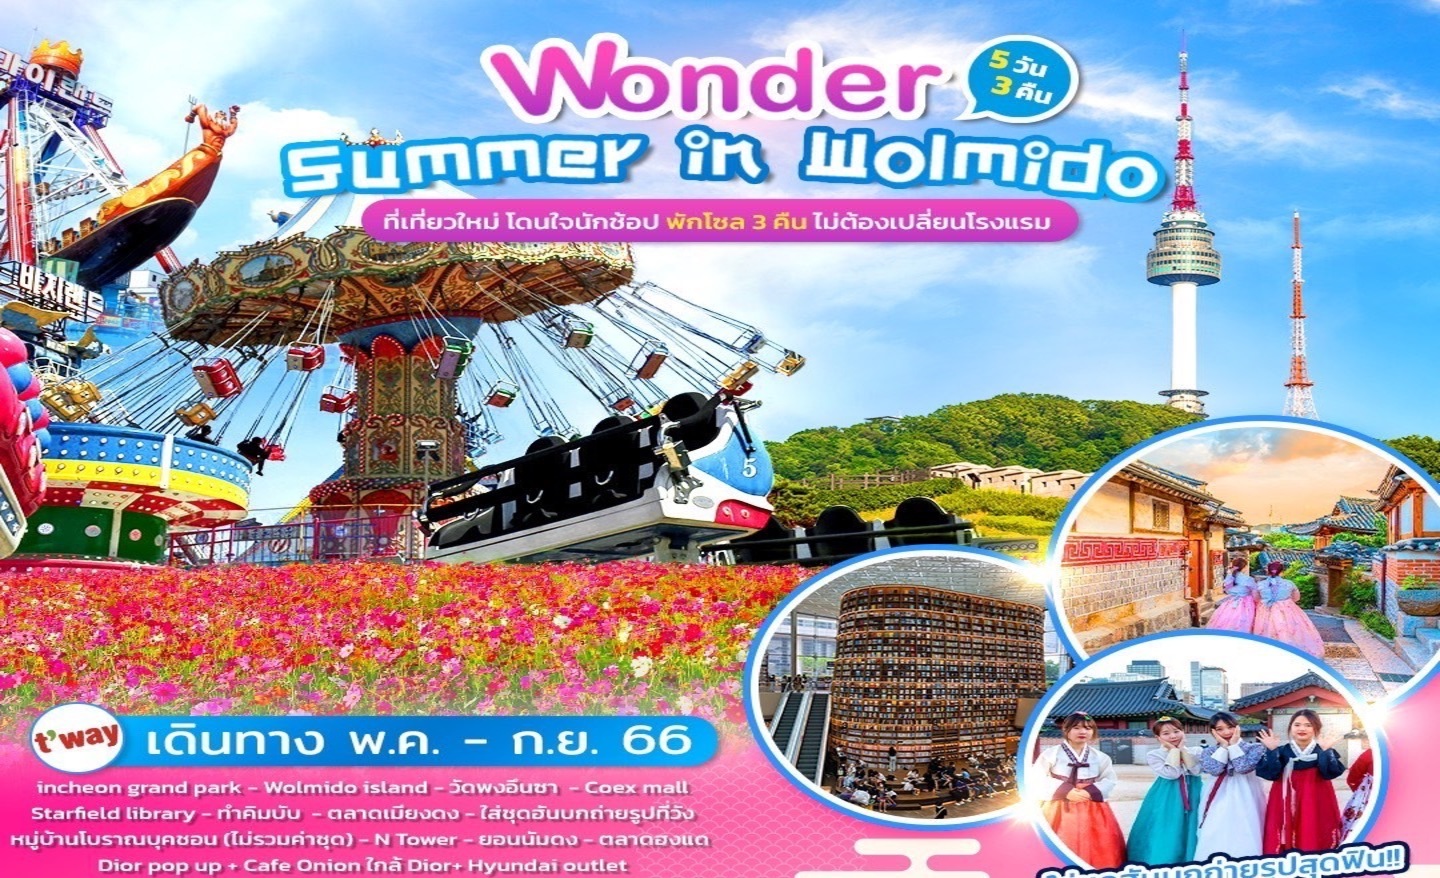 ทัวร์เกาหลี Wonder Summer In Wolmido (มิ.ย.-ก.ย.66)